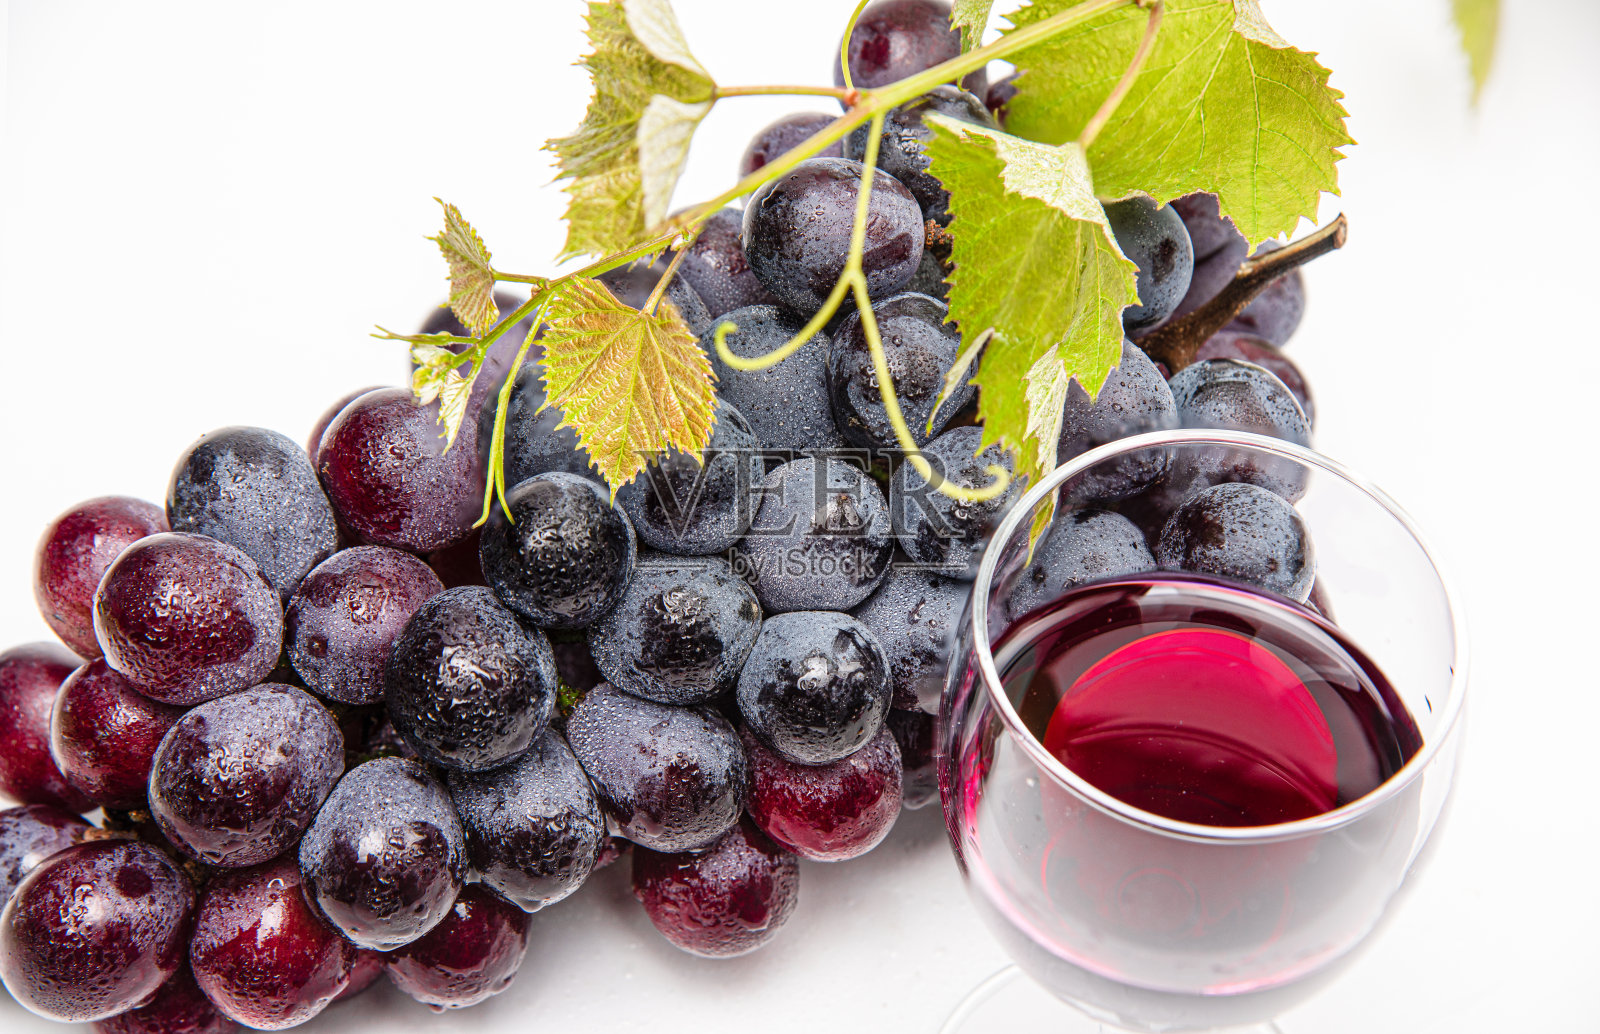 葡萄酒和葡萄的结合照片摄影图片